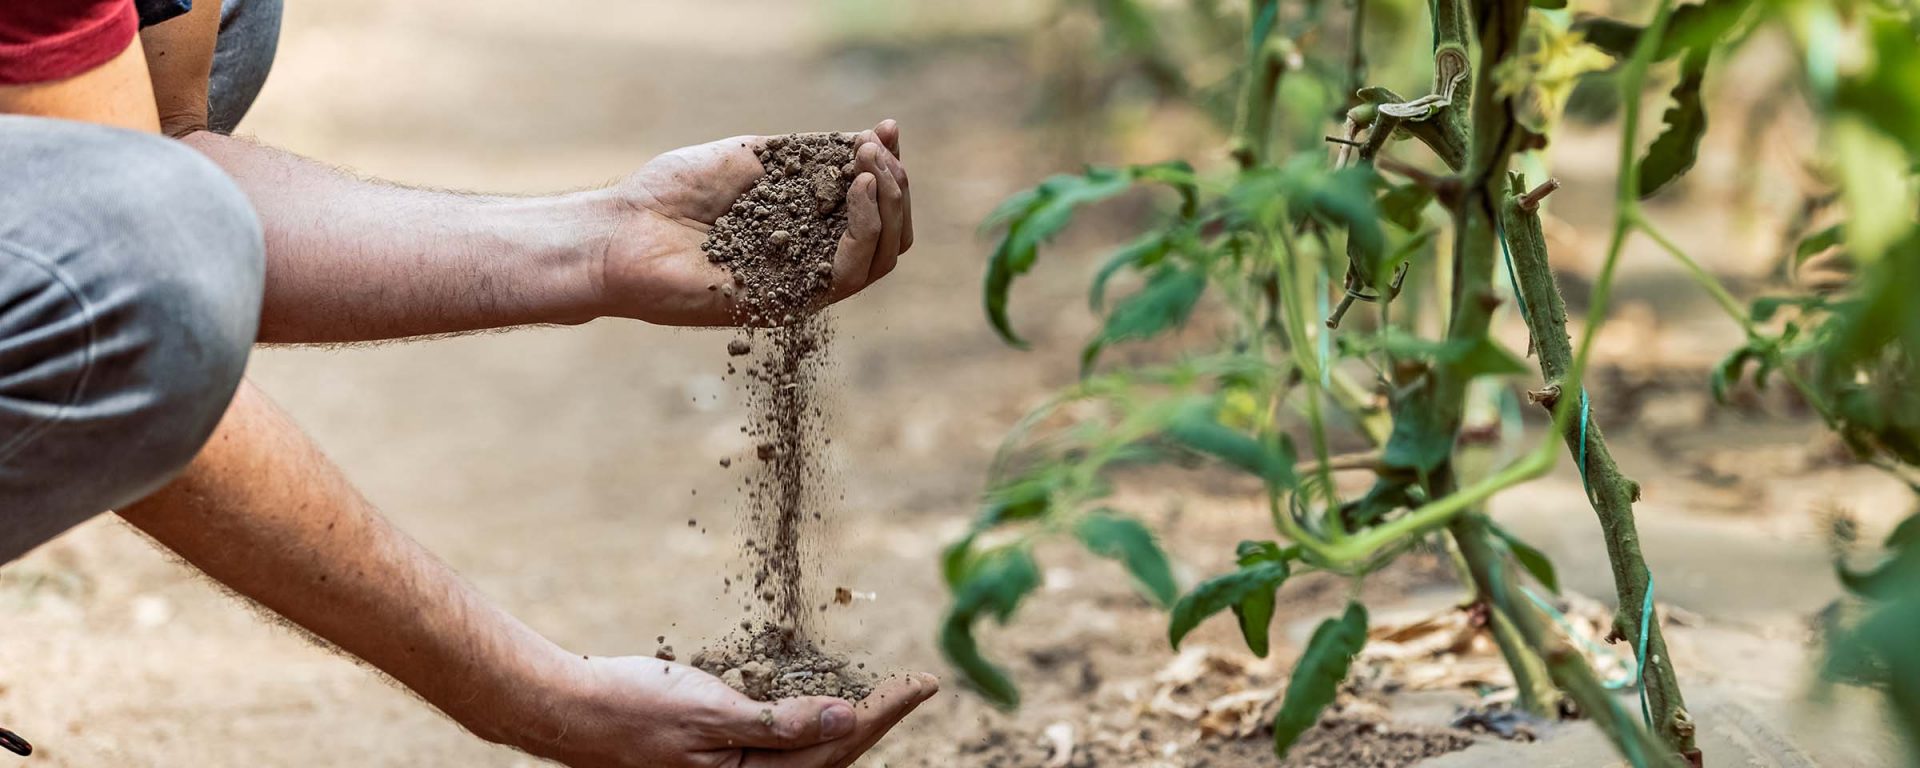 A farmer running soil through their hands